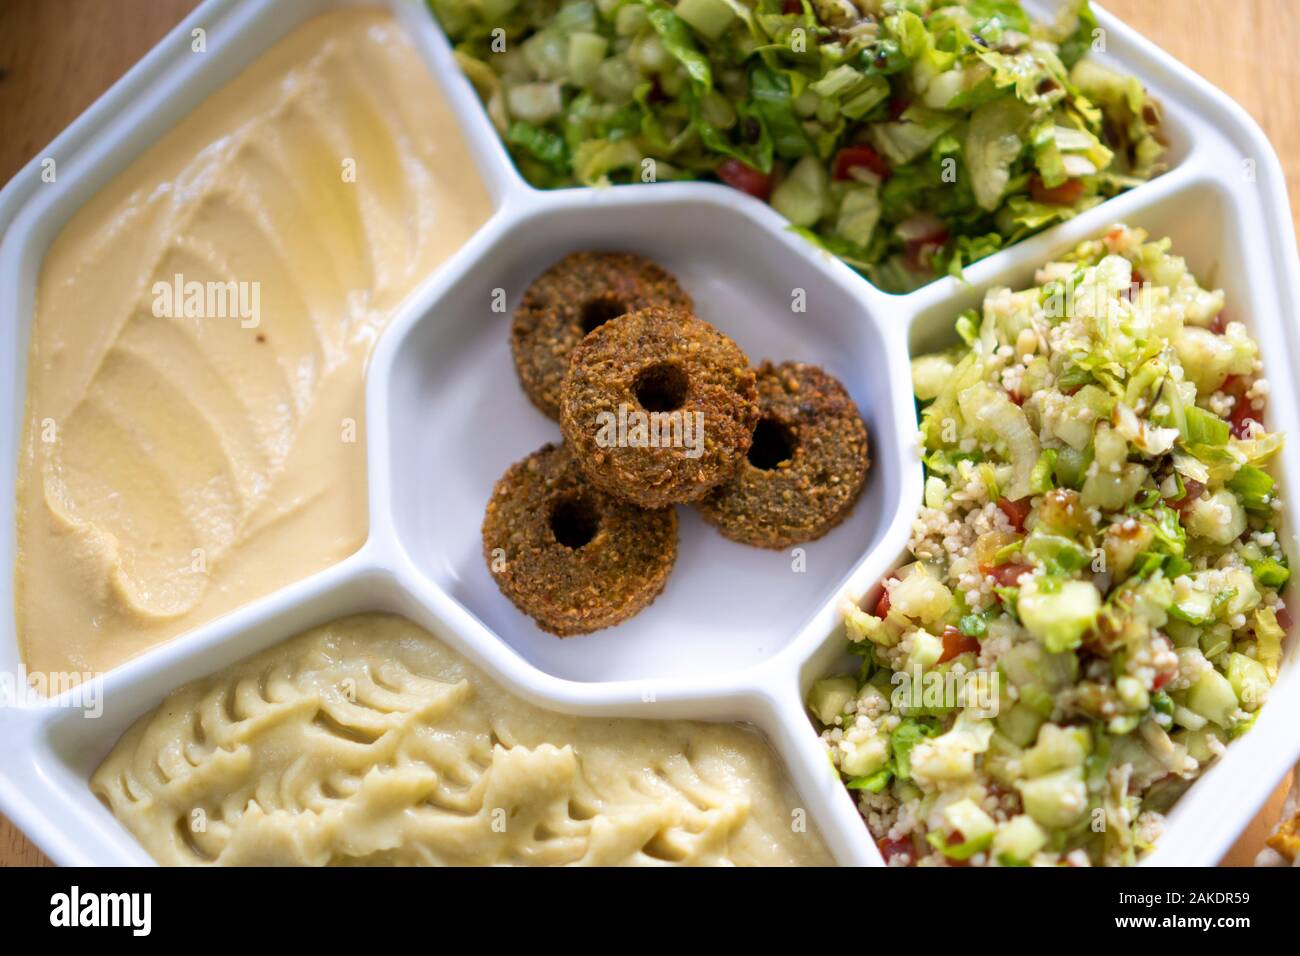 Eine Platte mit Falafel, Hummus und anderen mittelöstlichen Salaten. Stockfoto